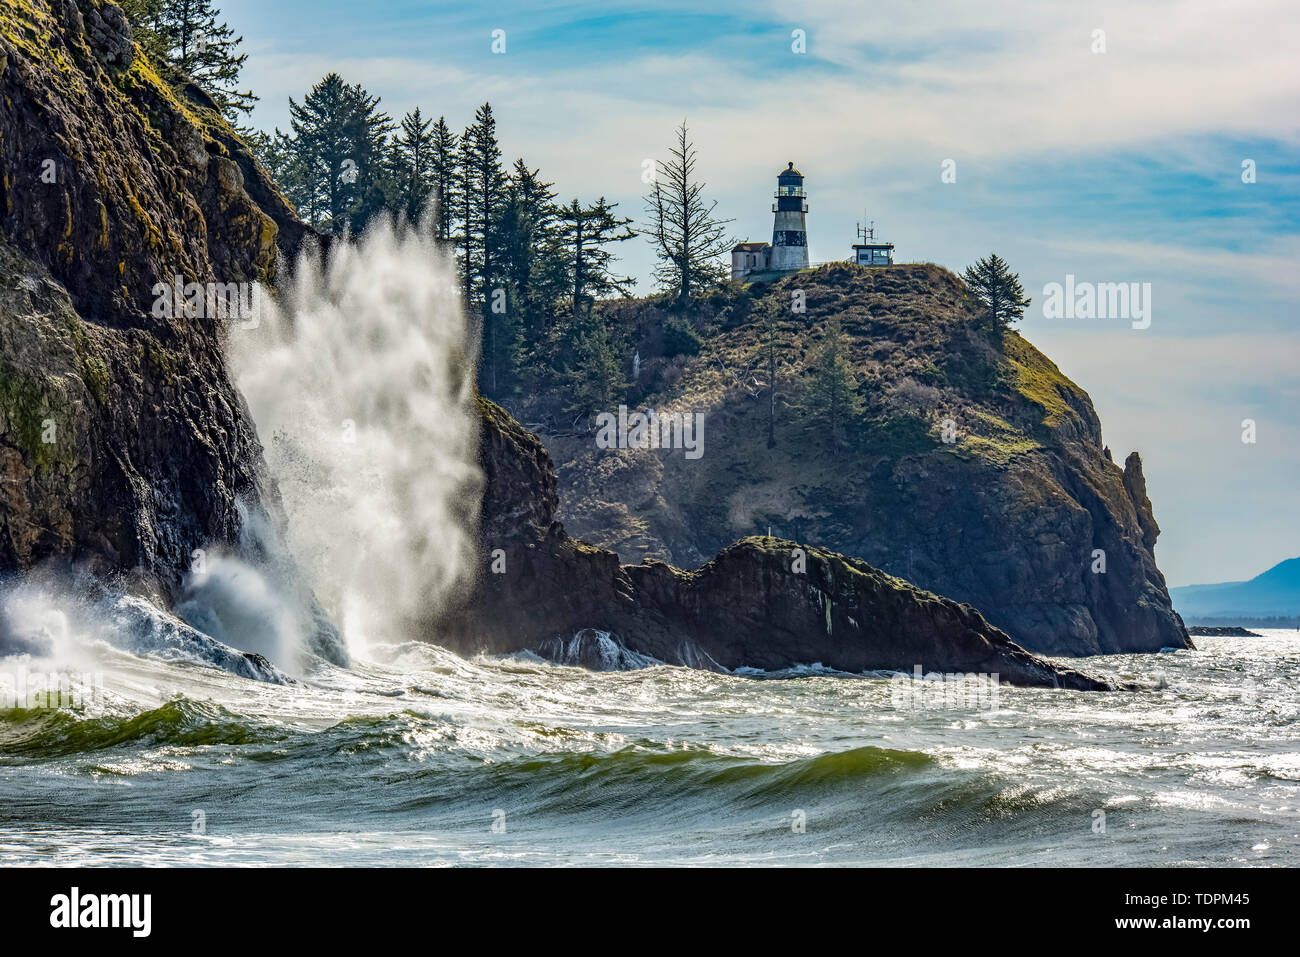 Eine Welle stürzt auf den Felsen unterhalb der Cape Enttäuschung North Head Leuchtturm an der Mündung des Columbia River. Stockfoto